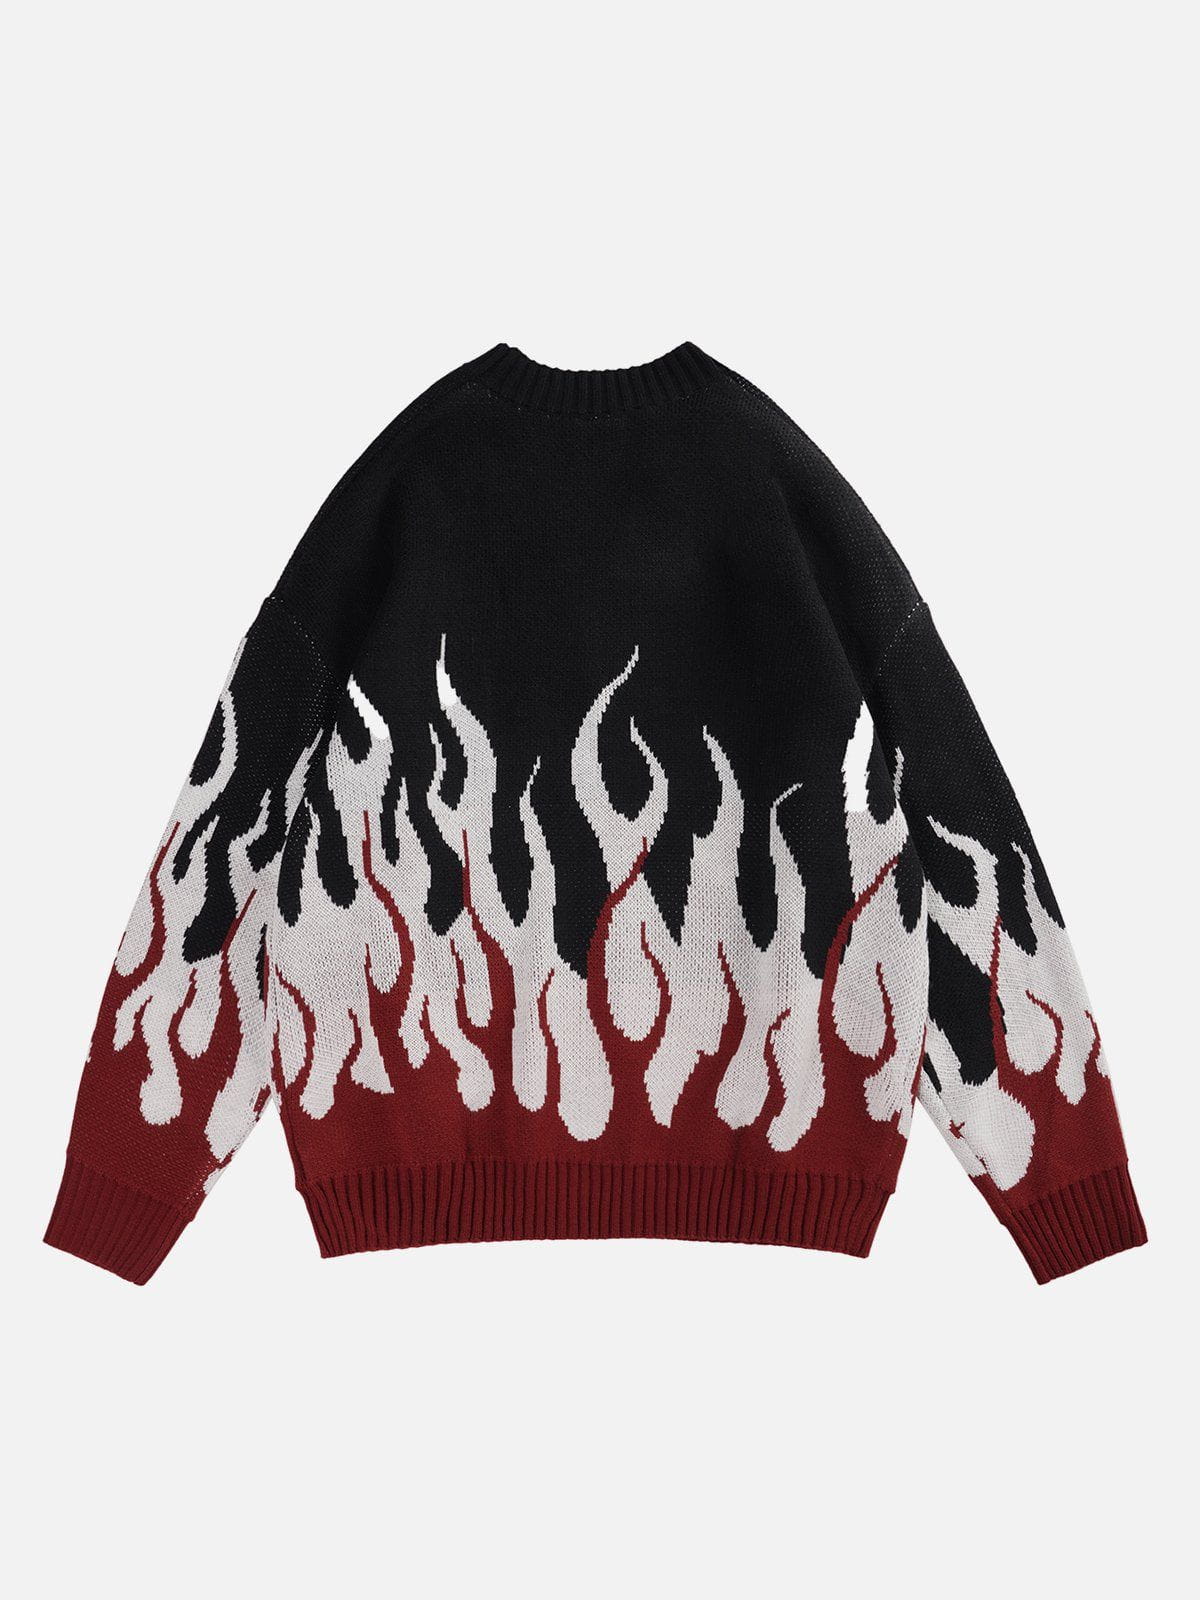 Eprezzy® - Flame Print Sweater Streetwear Fashion - eprezzy.com